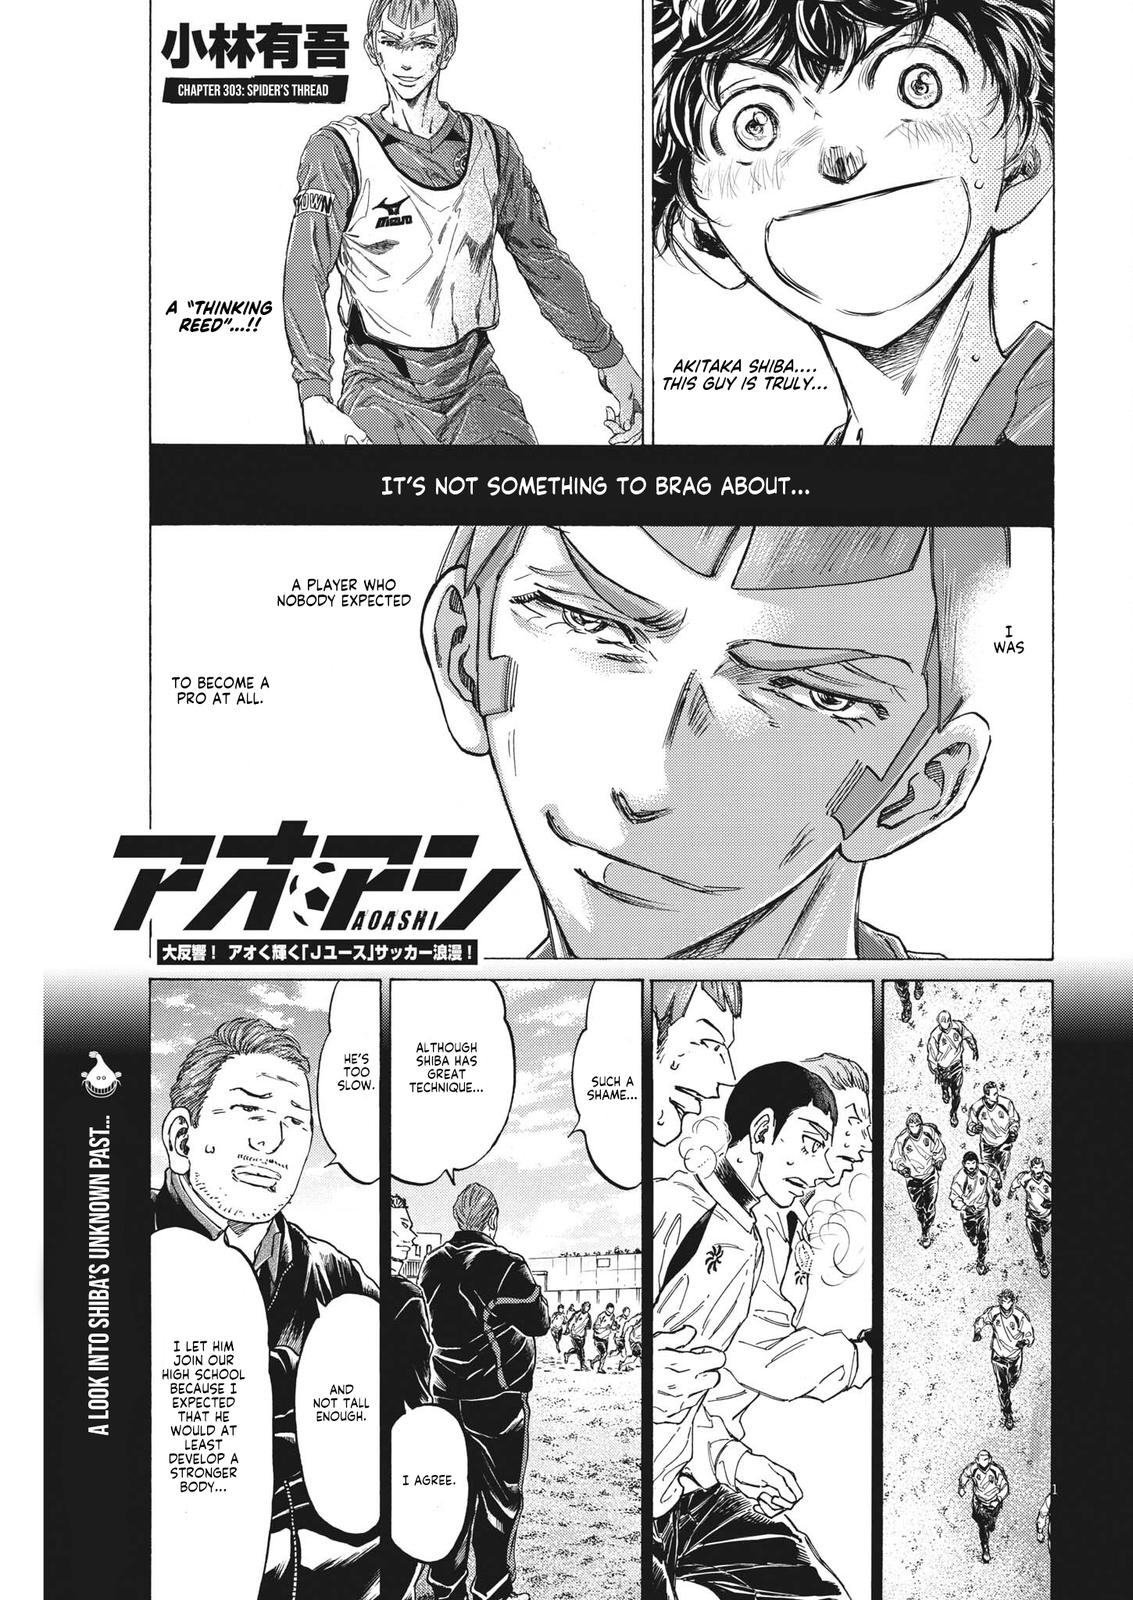 Ao Ashi, Chapter 347 - Ao Ashi Manga Online